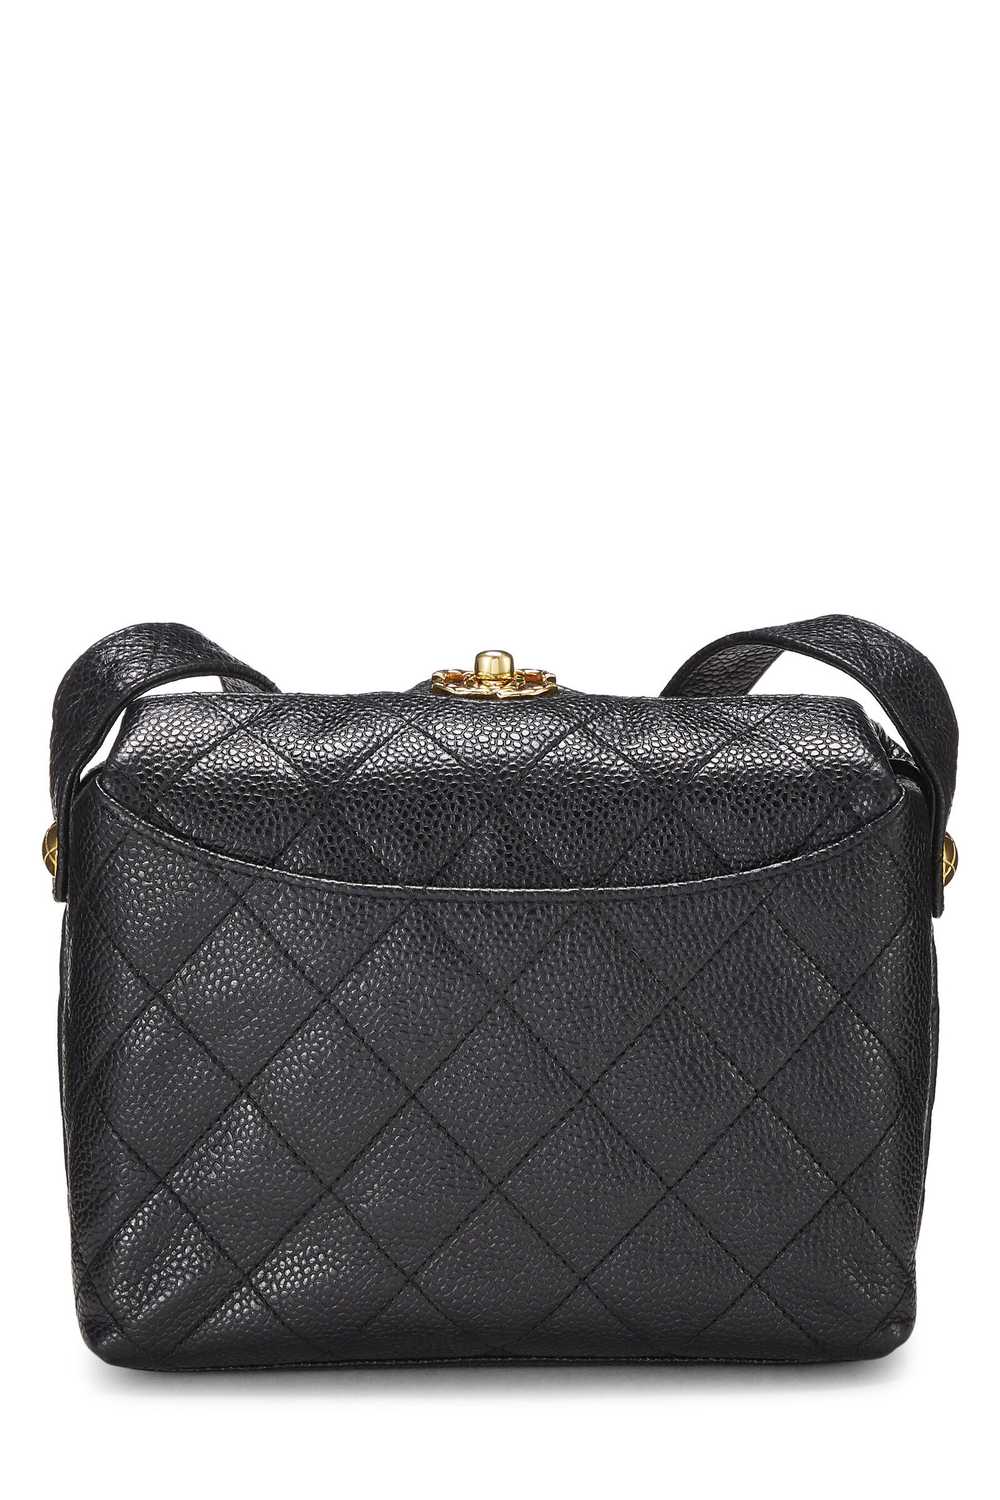 Black Caviar Shoulder Bag - image 5